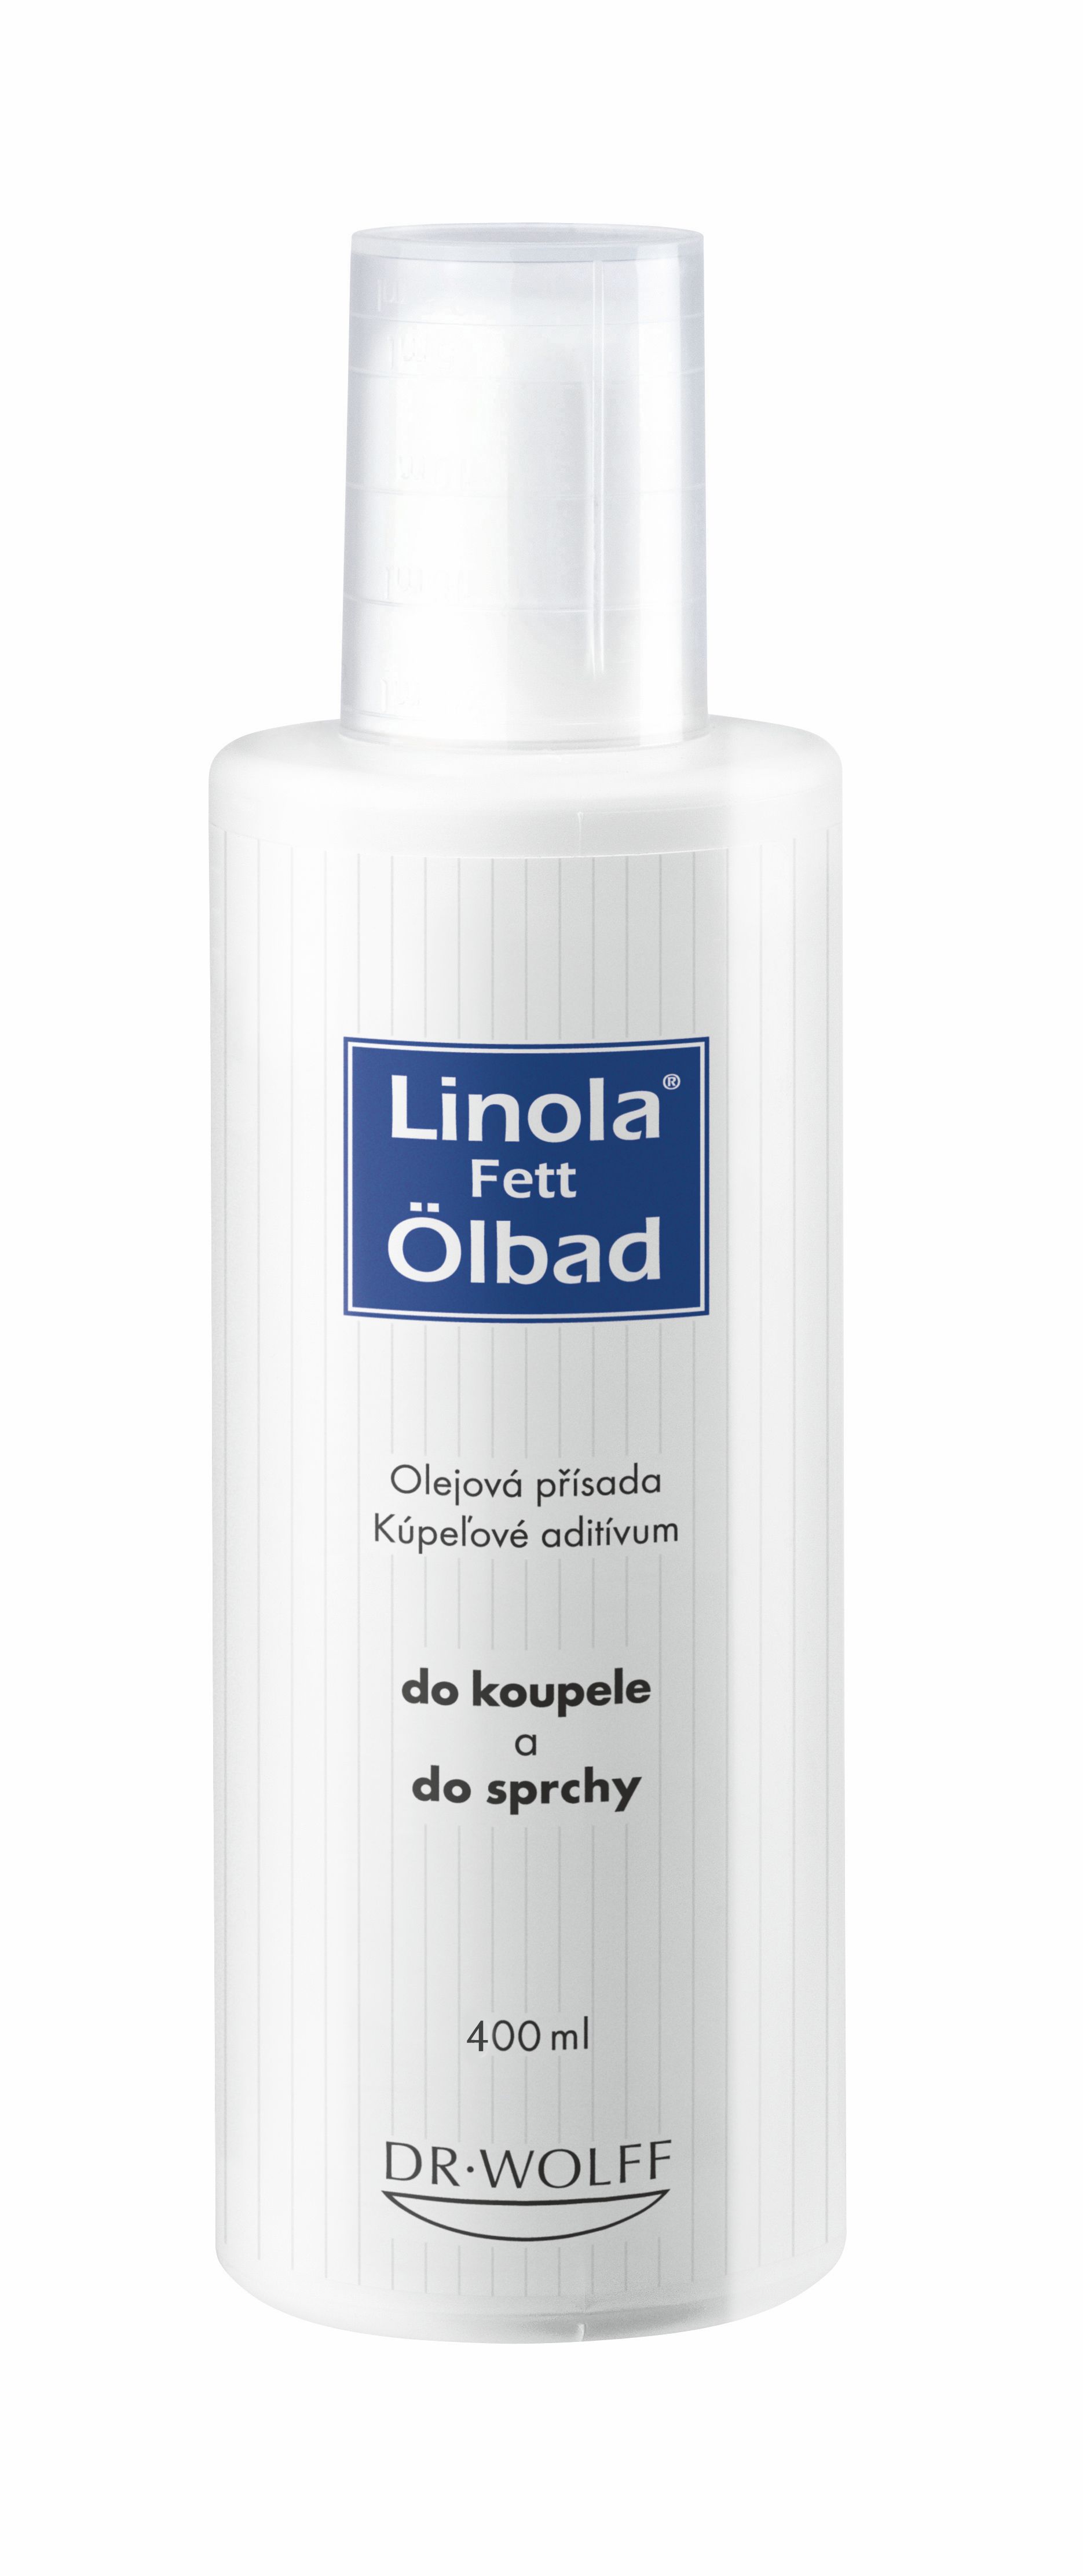 Linola-fett Ölbad přísada do koupele 400 ml Linola-fett